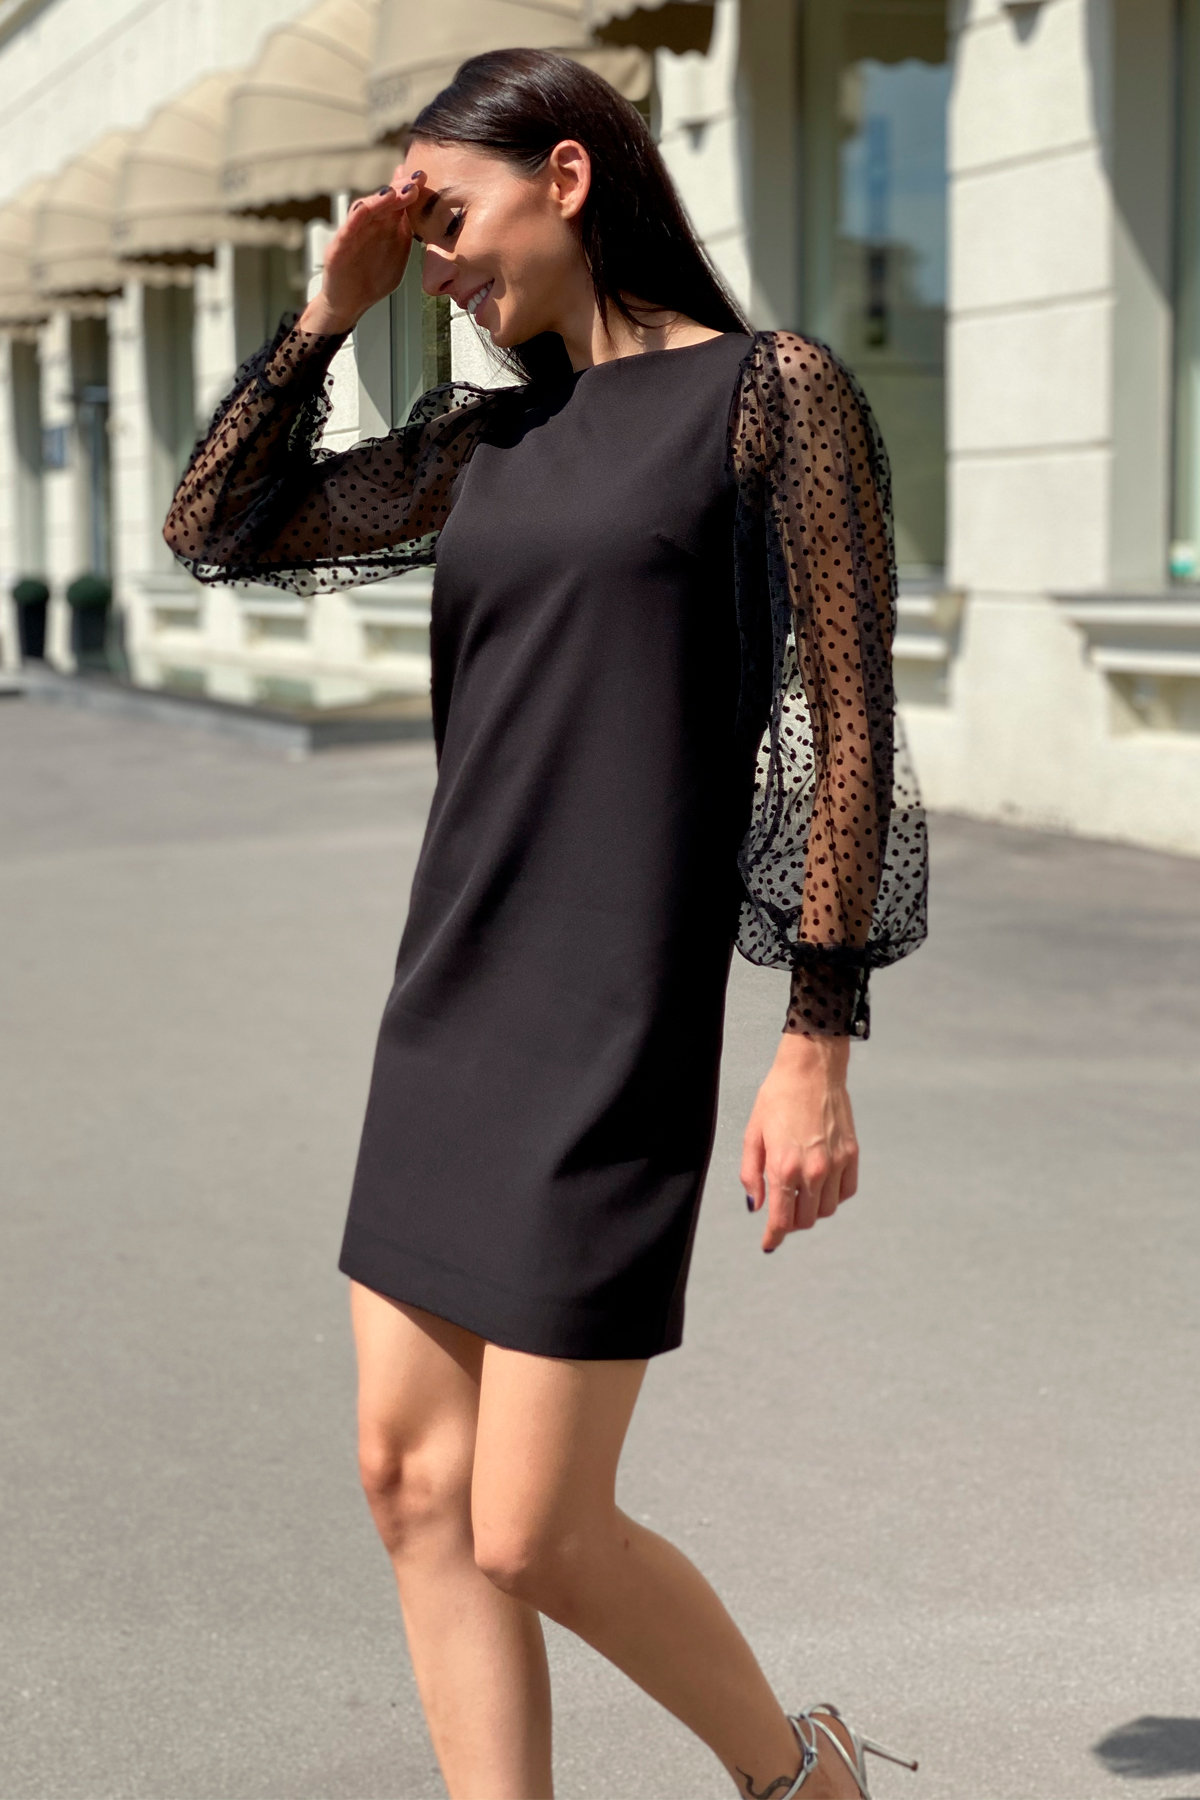 Платье Висконти 8978 АРТ. 45288 Цвет: Черный - фото 1, интернет магазин tm-modus.ru